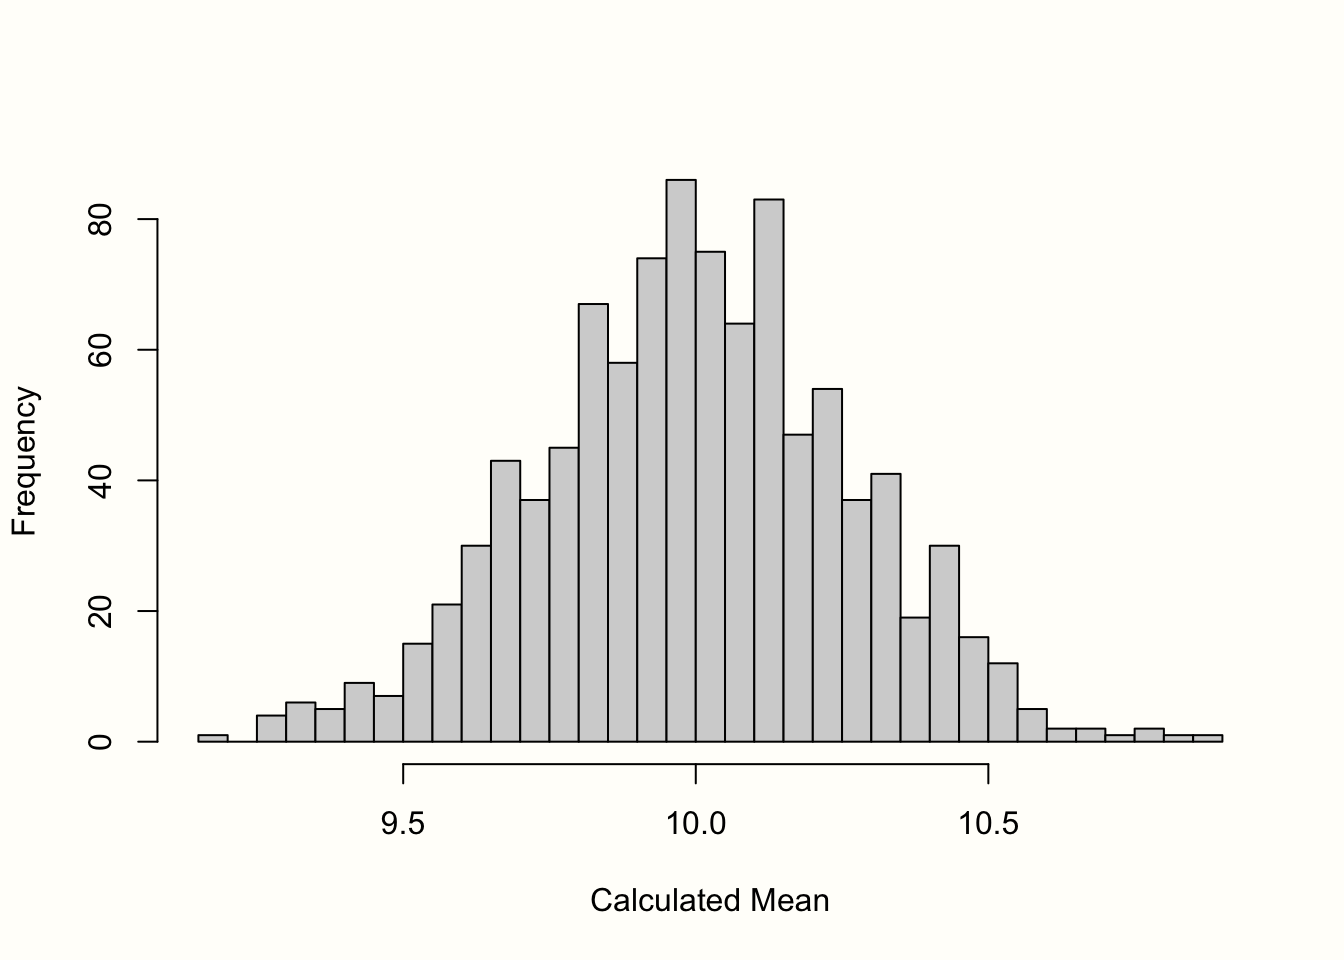 "Sampling distribution" of means (1000 samples).